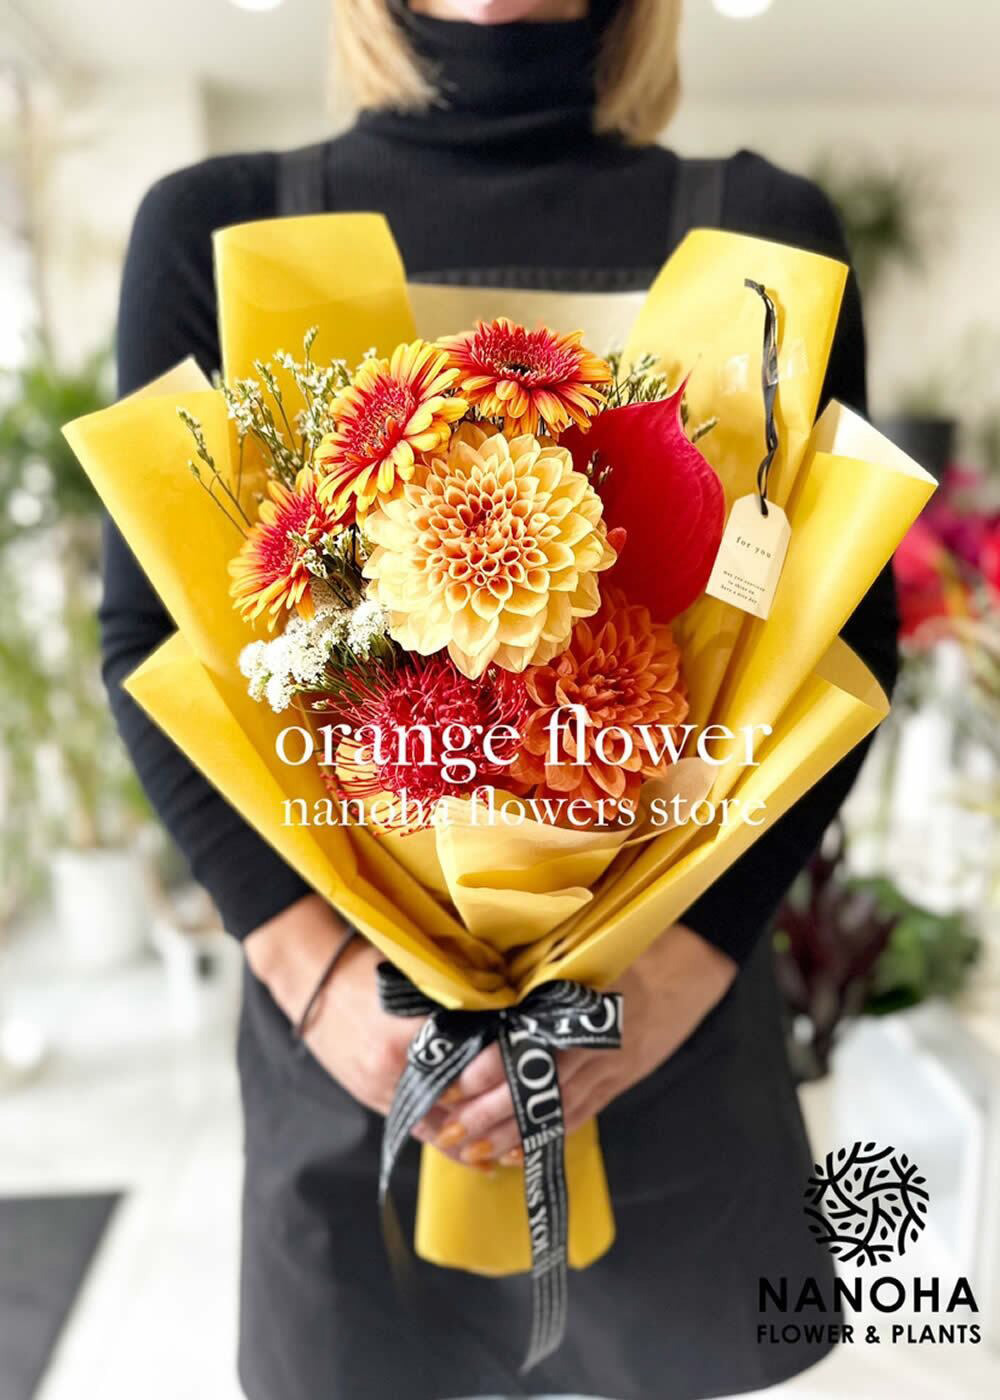 NANOHA堅粕店では各種お祝いのお花をご準備しております。